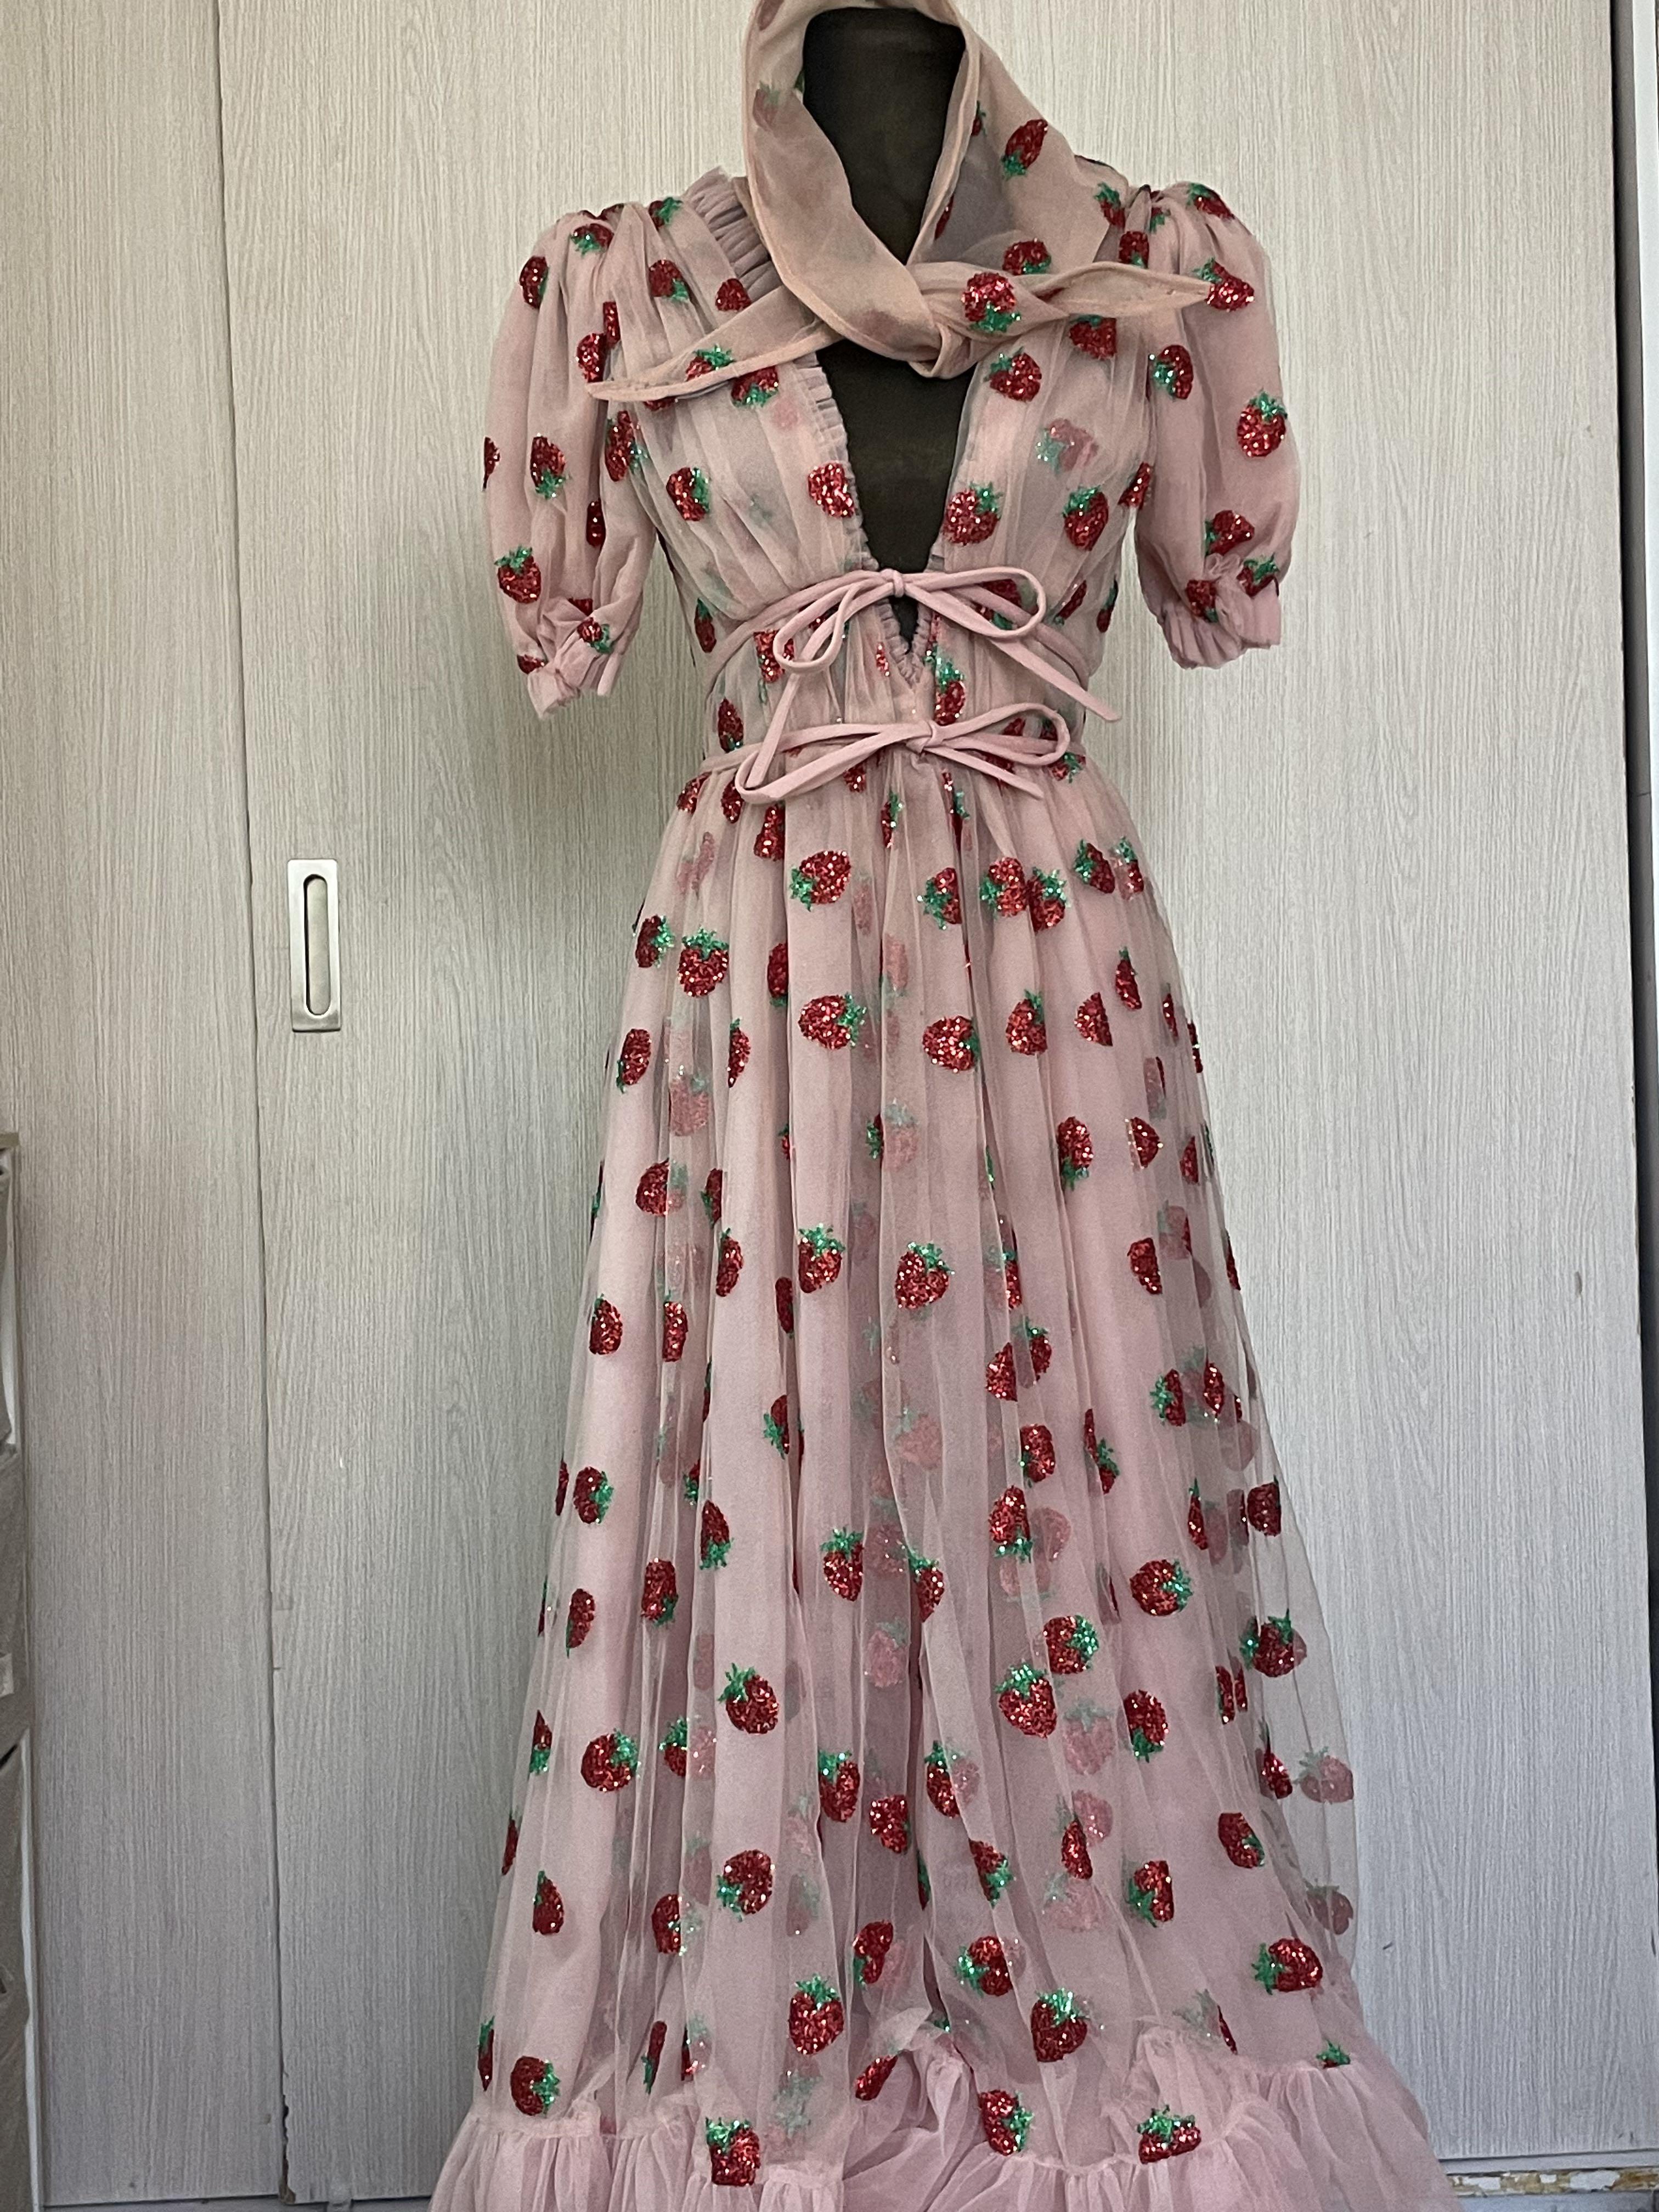 Corset Strawberry Mini Dress – Lirika Matoshi